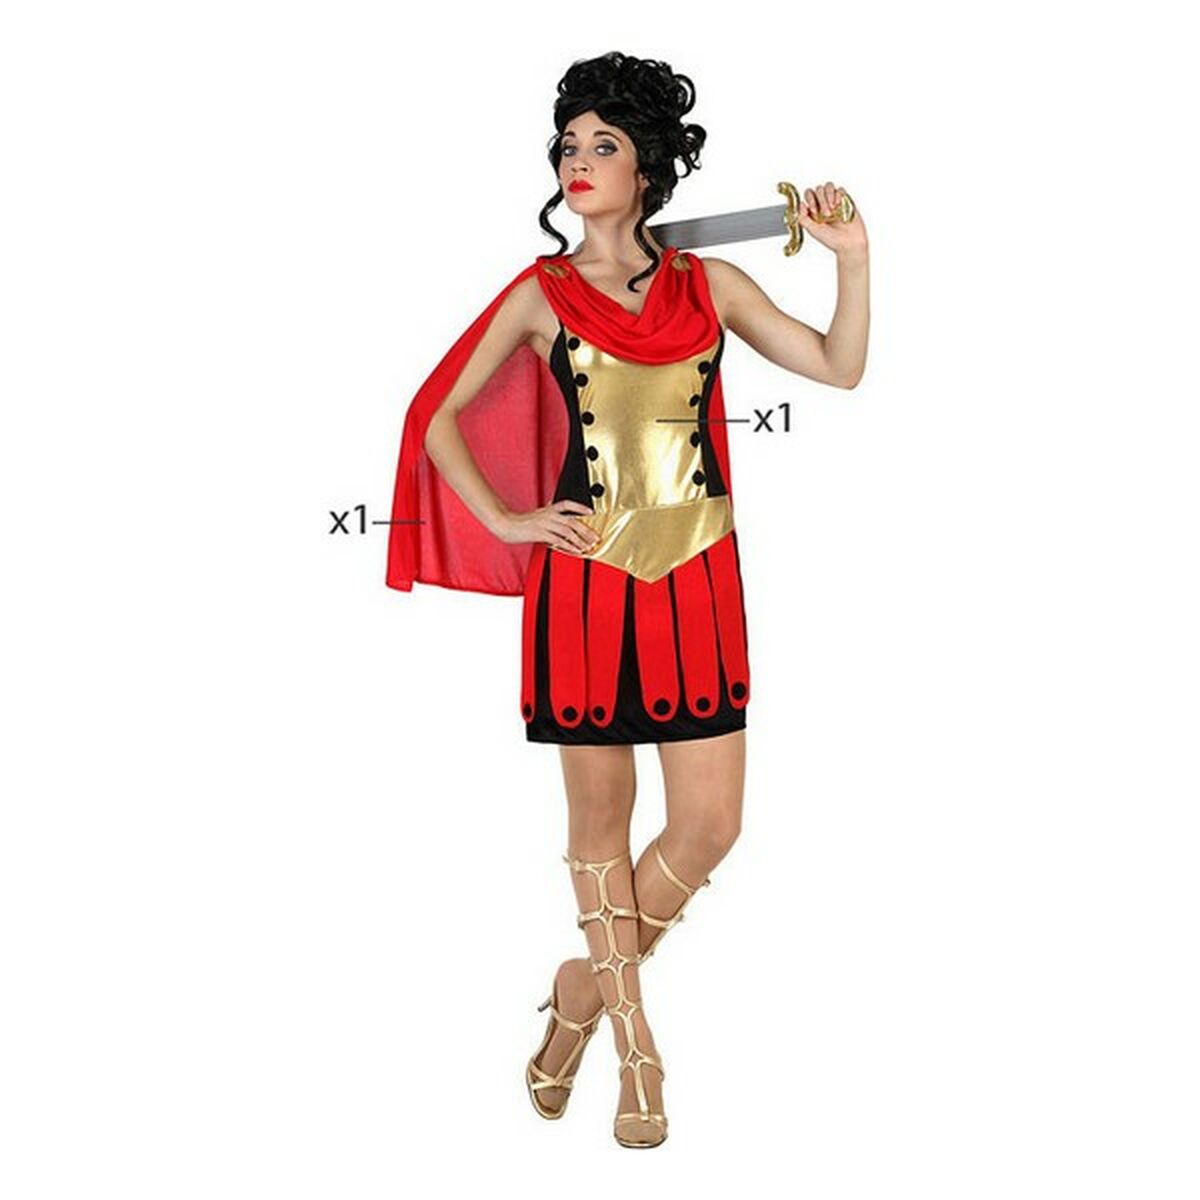 Costume per Adulti (2 pcs) Guerriera Romana Taglia:XS/S - Disponibile in 3-4 giorni lavorativi